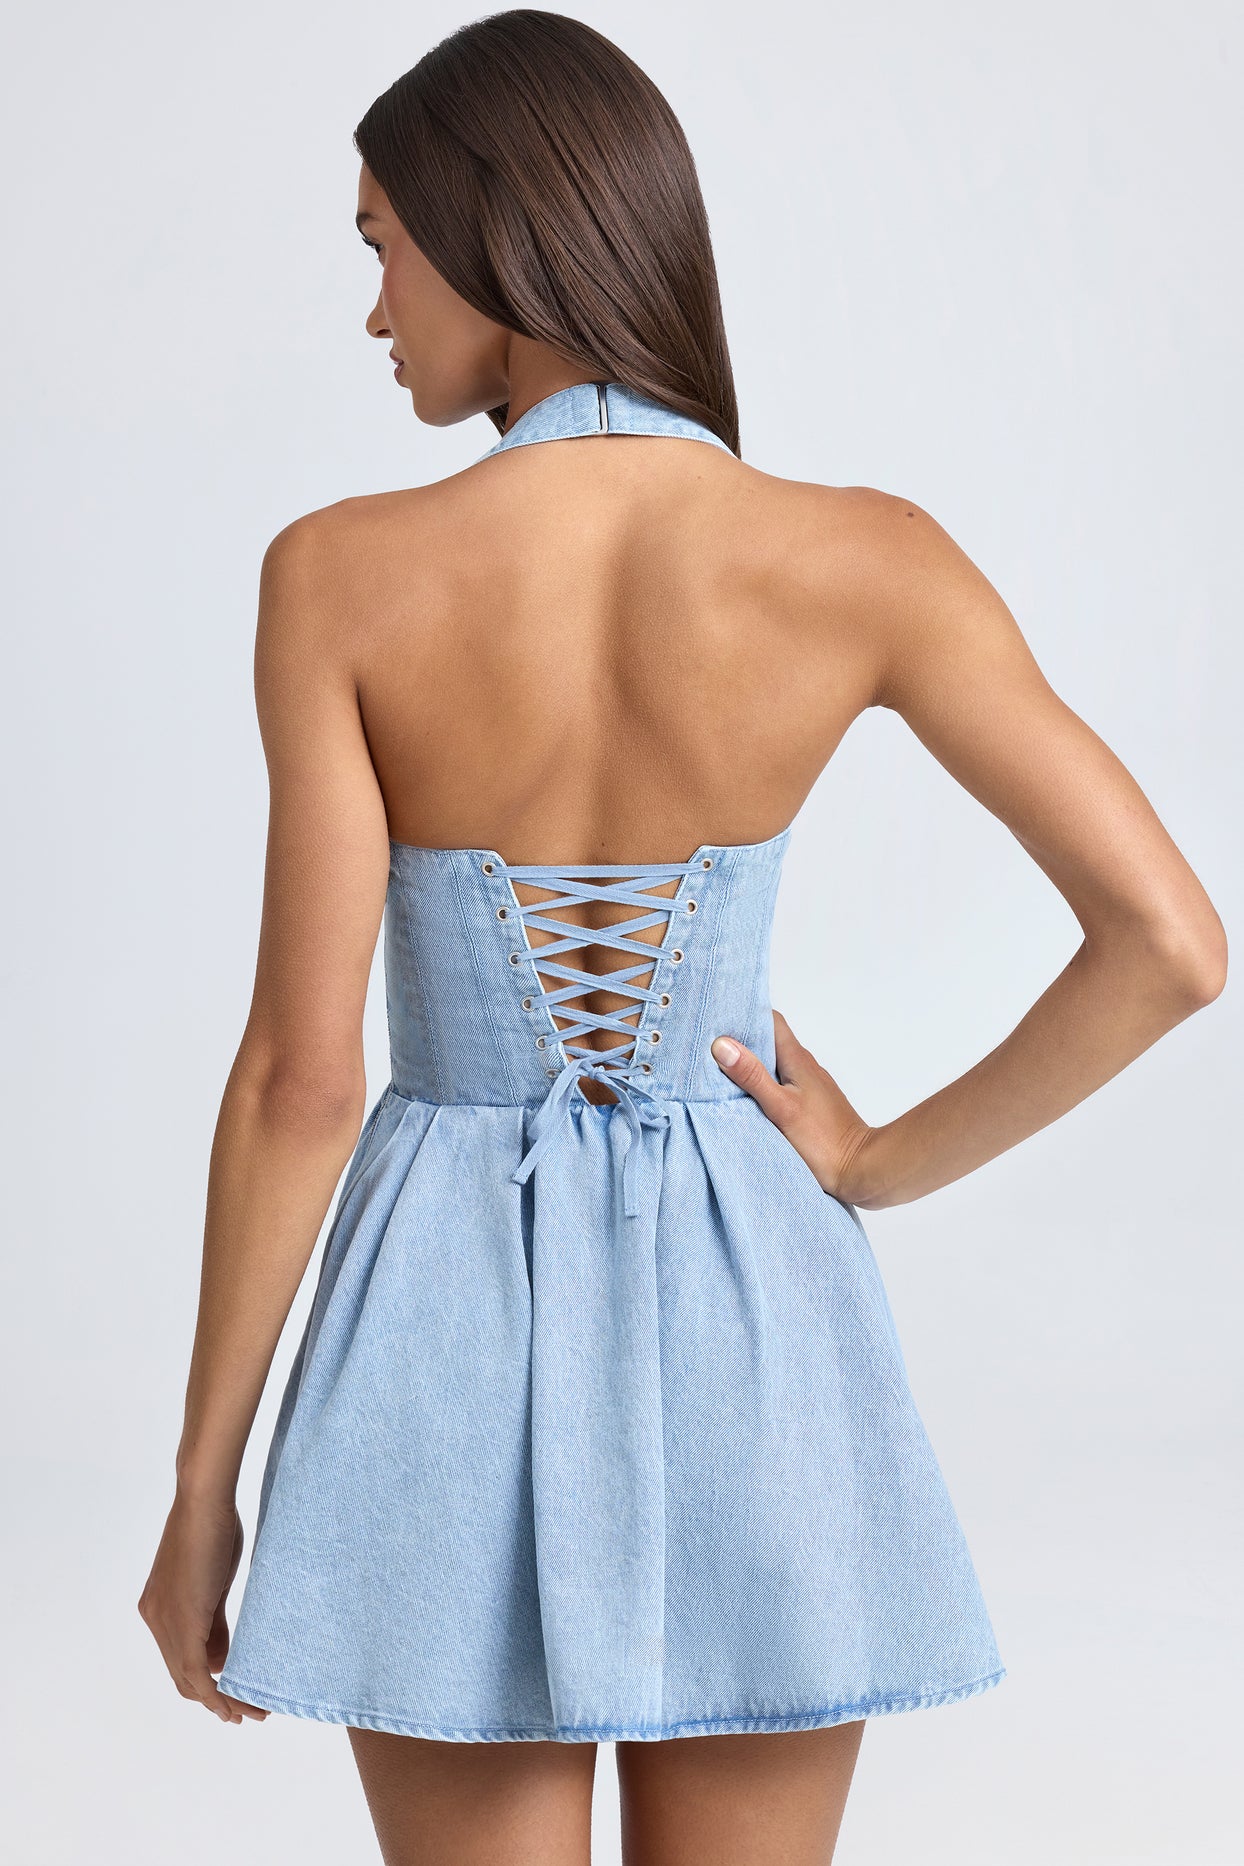 Micro-robe corset dos nu en bleu clair délavé